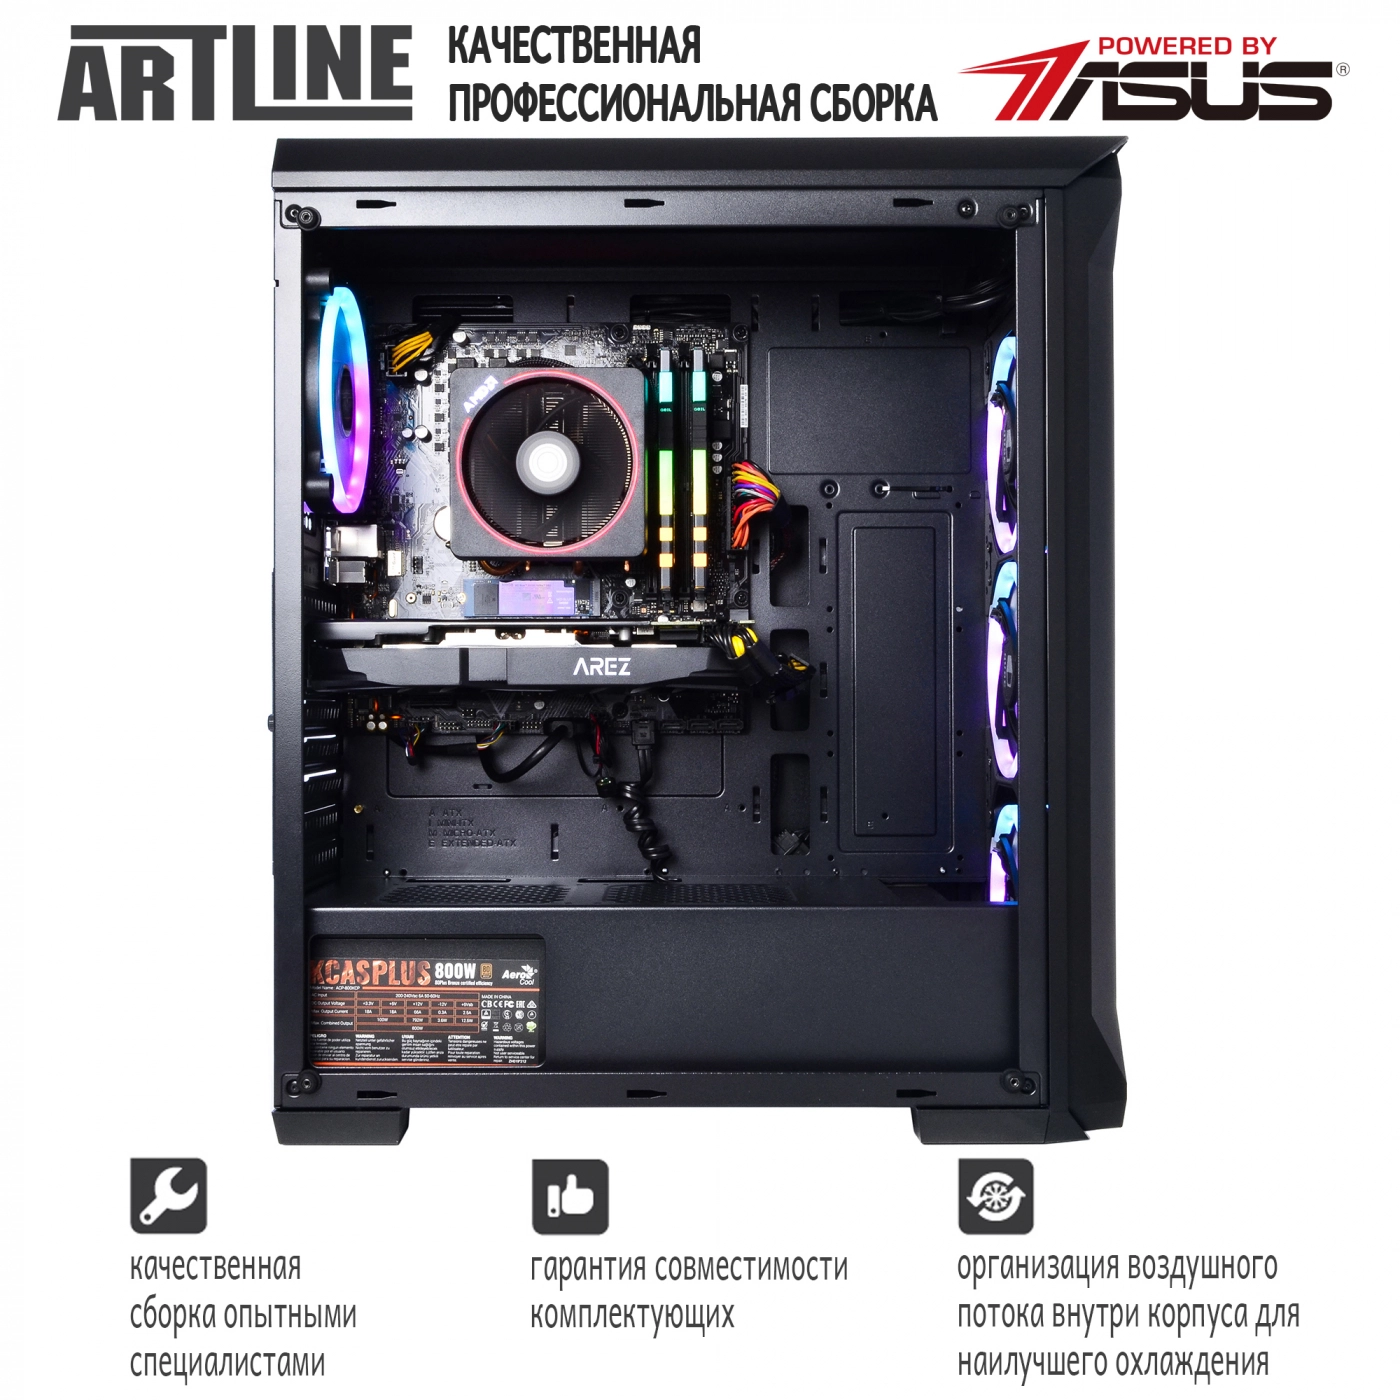 Купить Компьютер ARTLINE Gaming X65v21 - фото 4